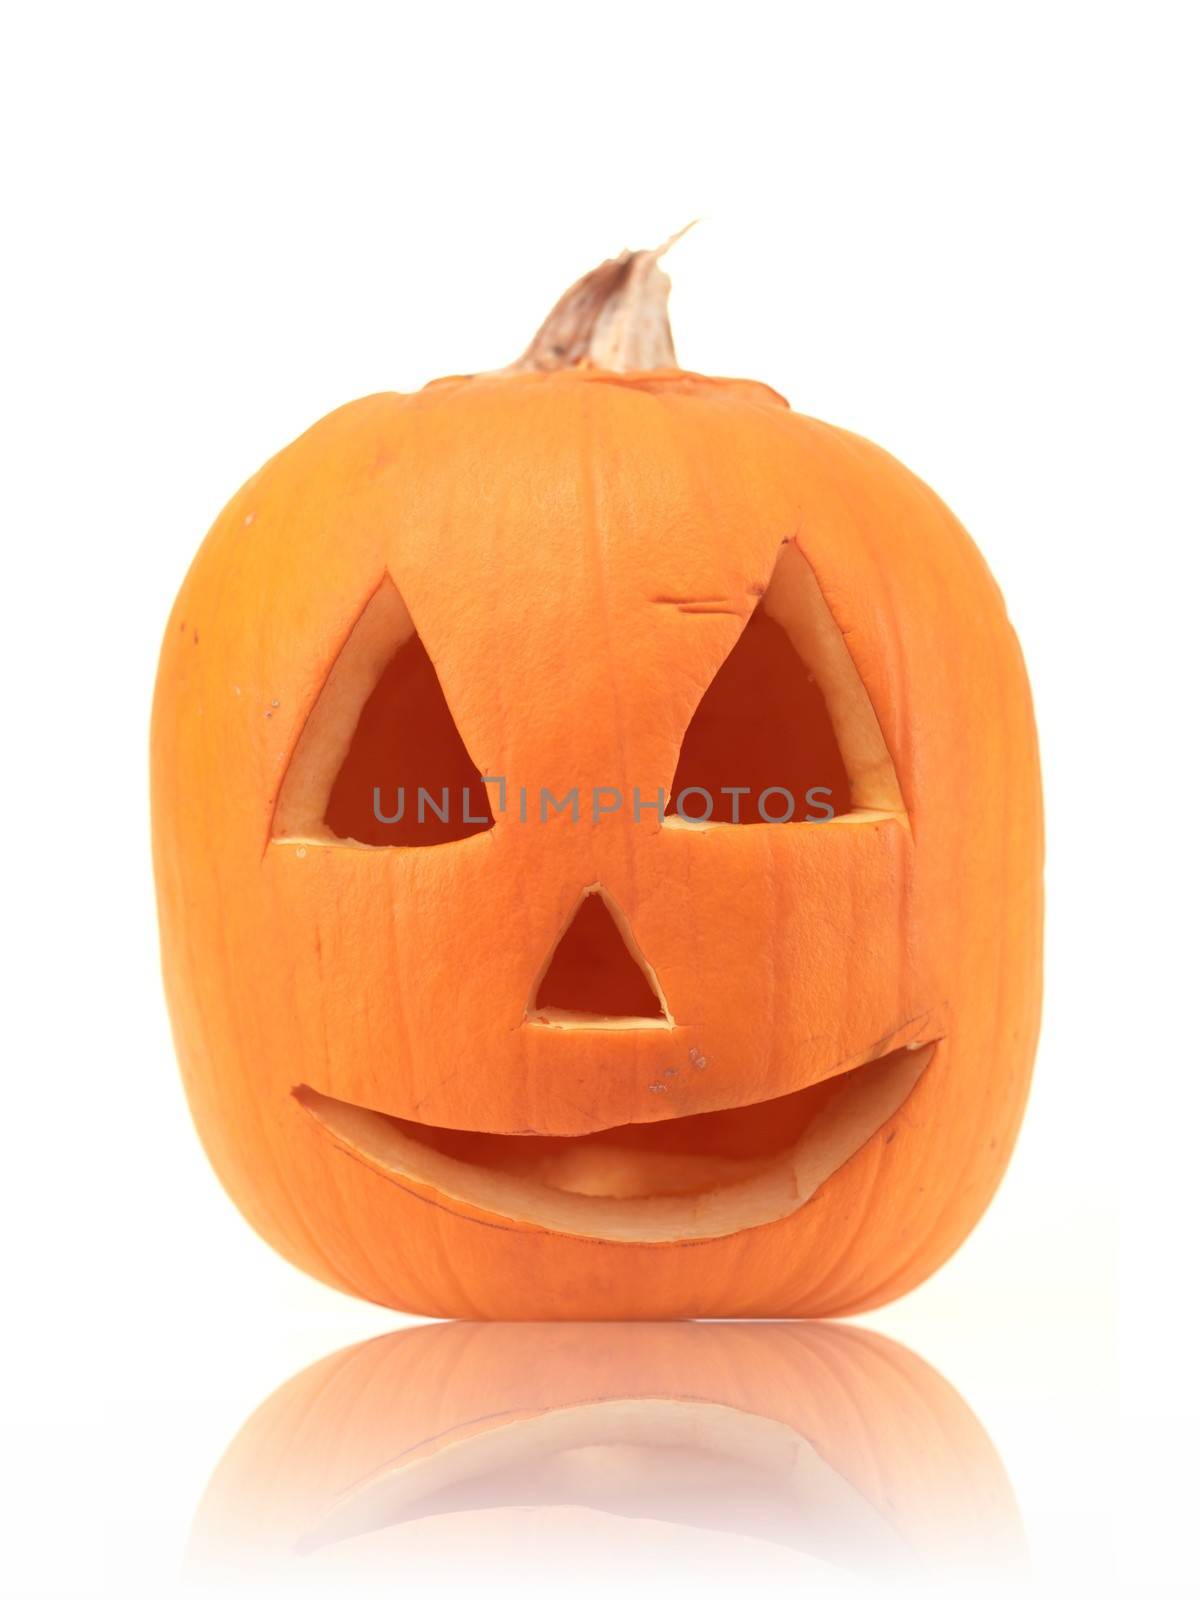 A close up shot of a halloween pumpkin